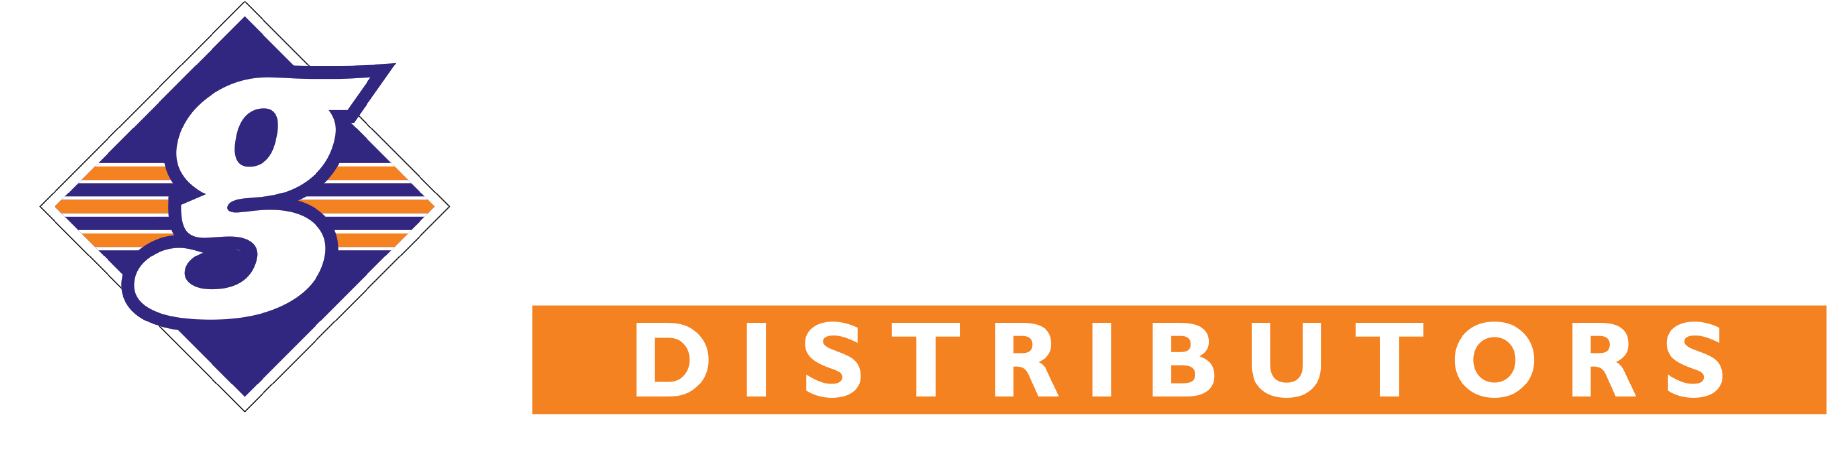 gepro-distributor-logo